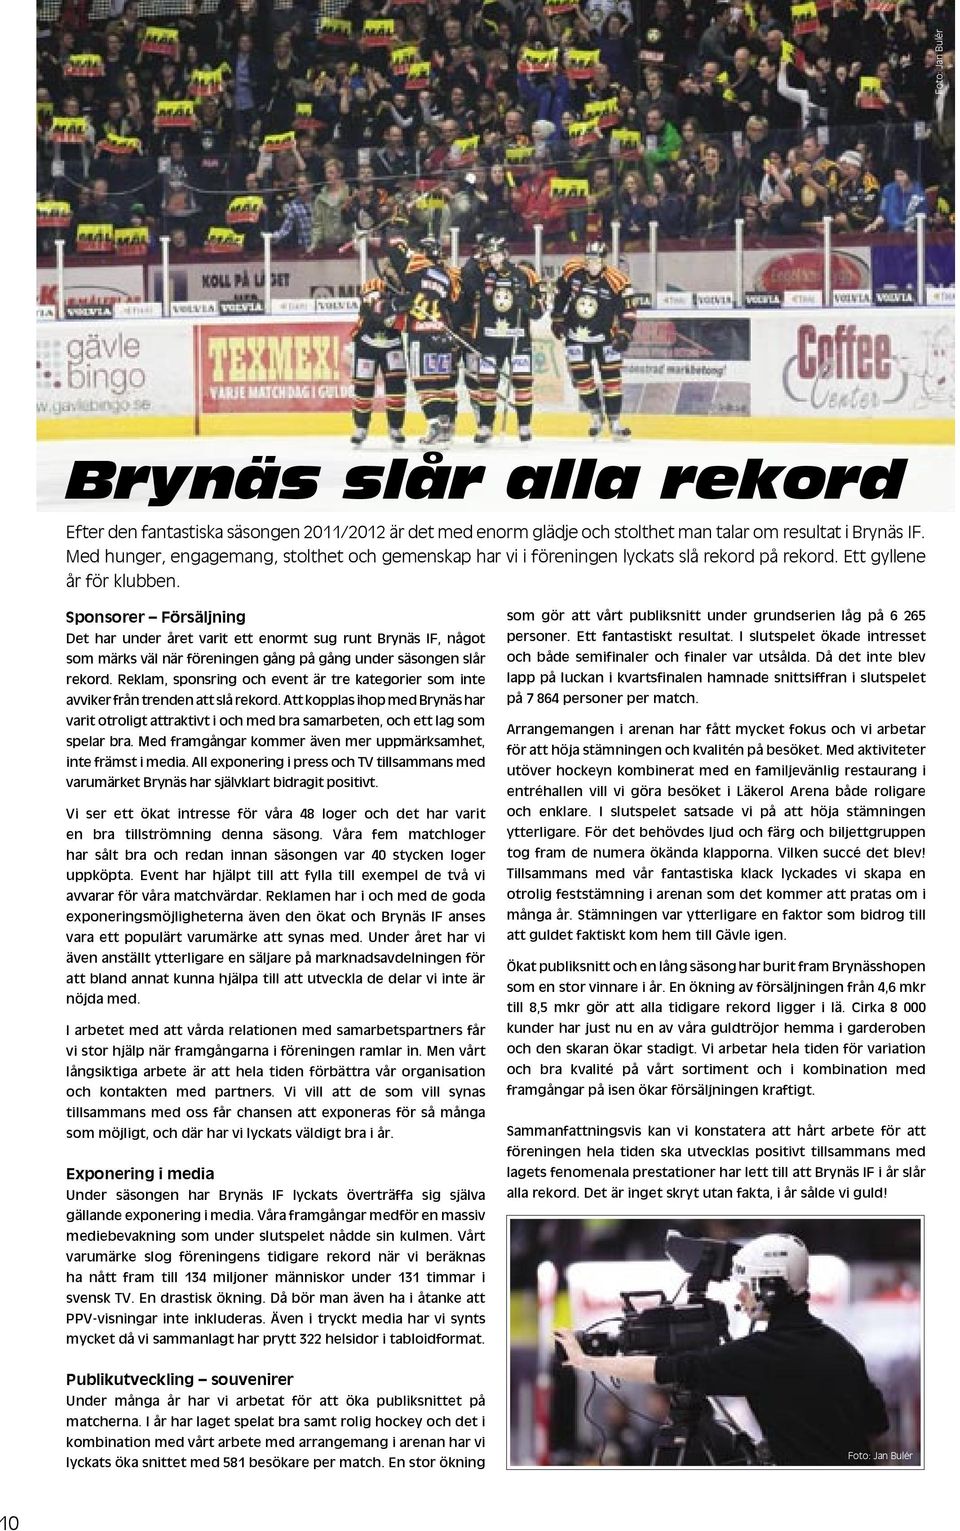 Sponsorer Försäljning Det har under året varit ett enormt sug runt Brynäs IF, något som märks väl när föreningen gång på gång under säsongen slår rekord.